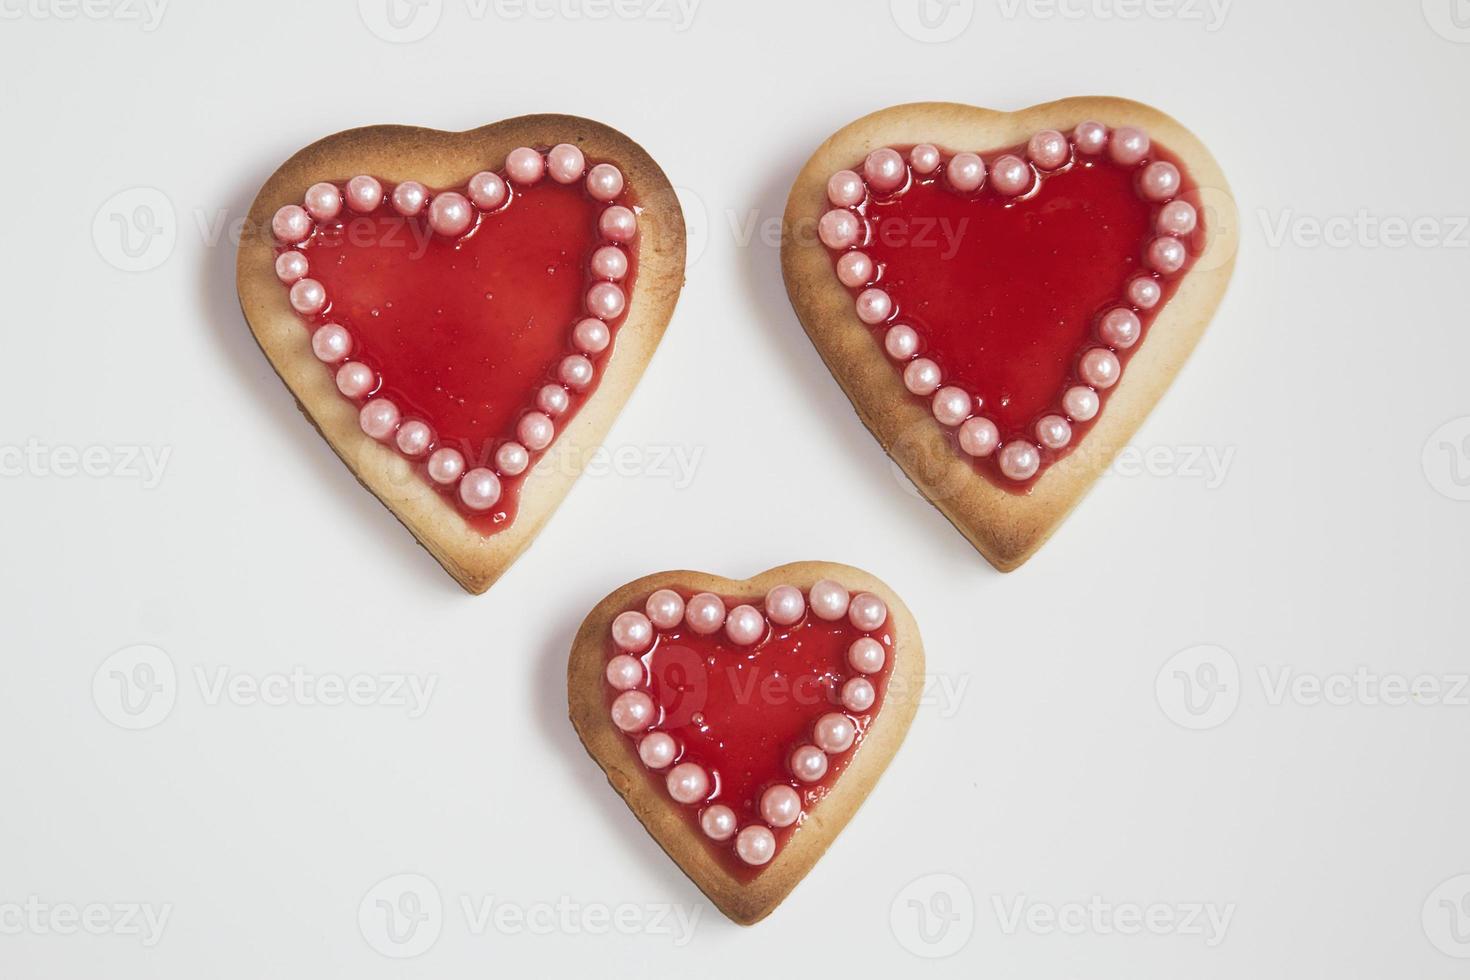 três biscoitos românticos do dia dos namorados em forma de coração foto